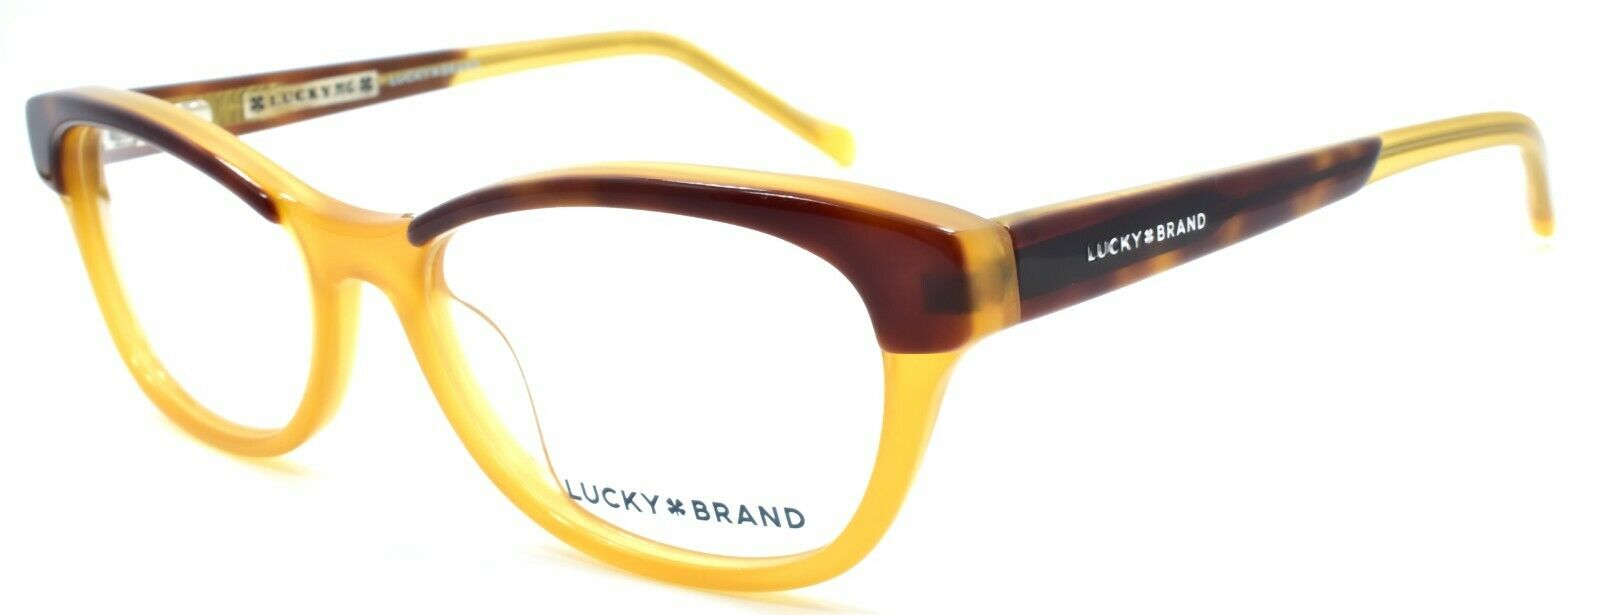 1-LUCKY BRAND D702 Kids Girls Eyeglasses Frames 47-15-130 Tortoise / Honey-751286282108-IKSpecs